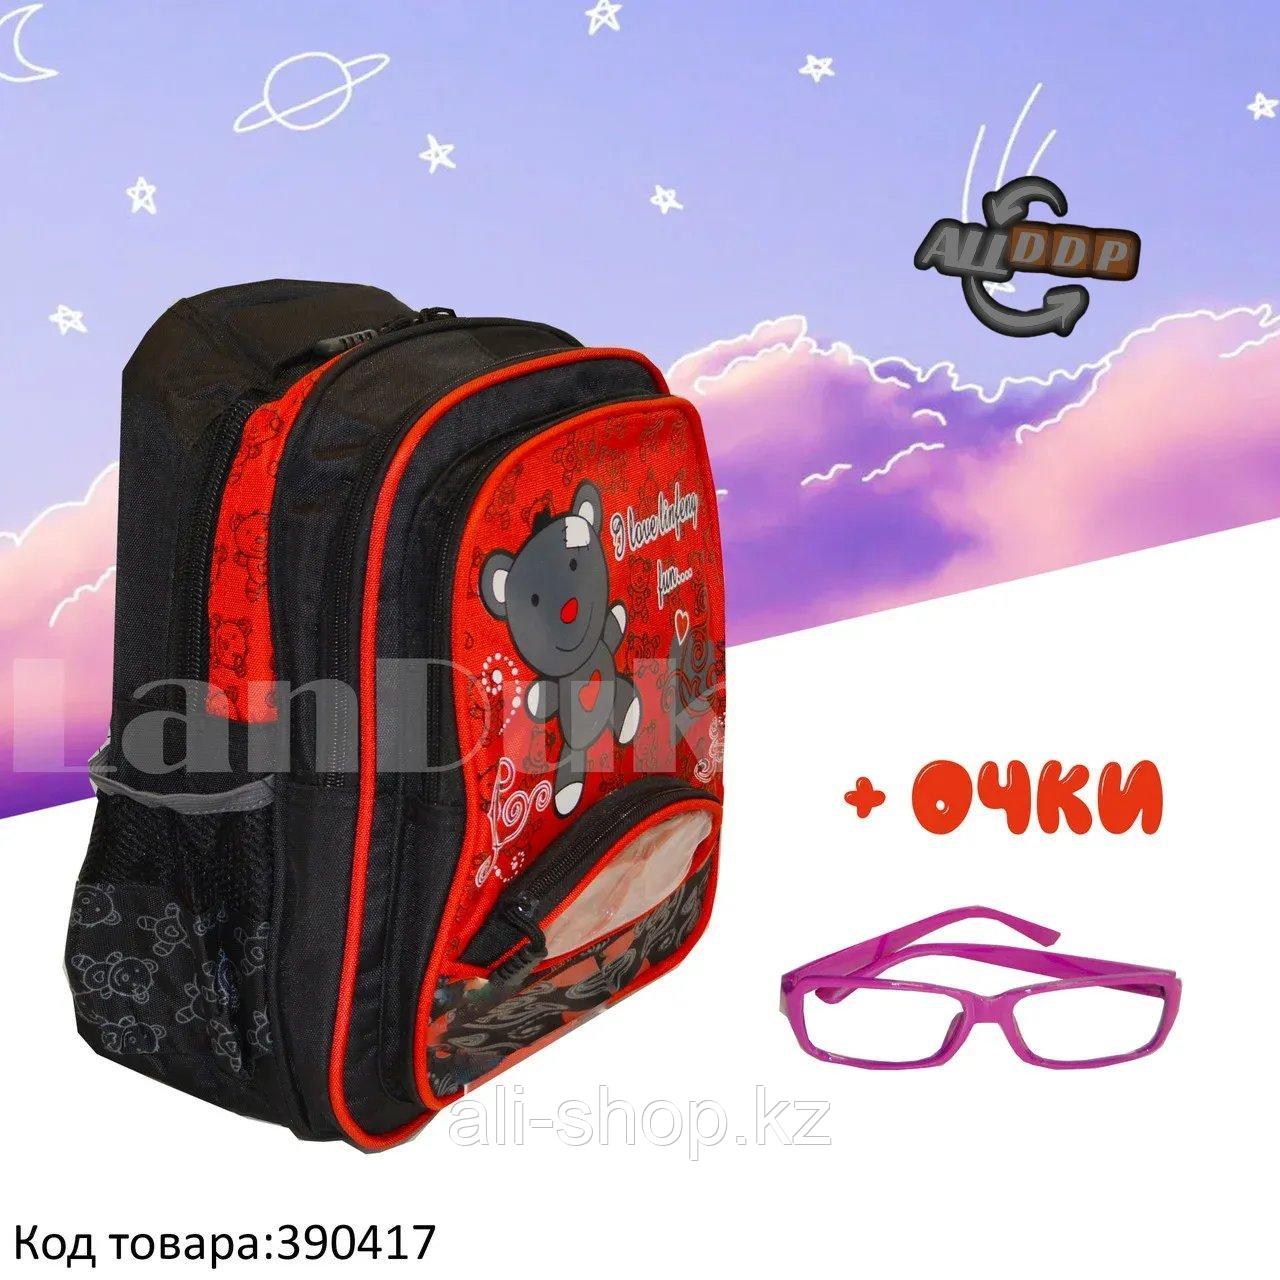 Рюкзак с ортопедической спинкой детский со светоотражателями и с очками Мишка JinRong F 50 красный